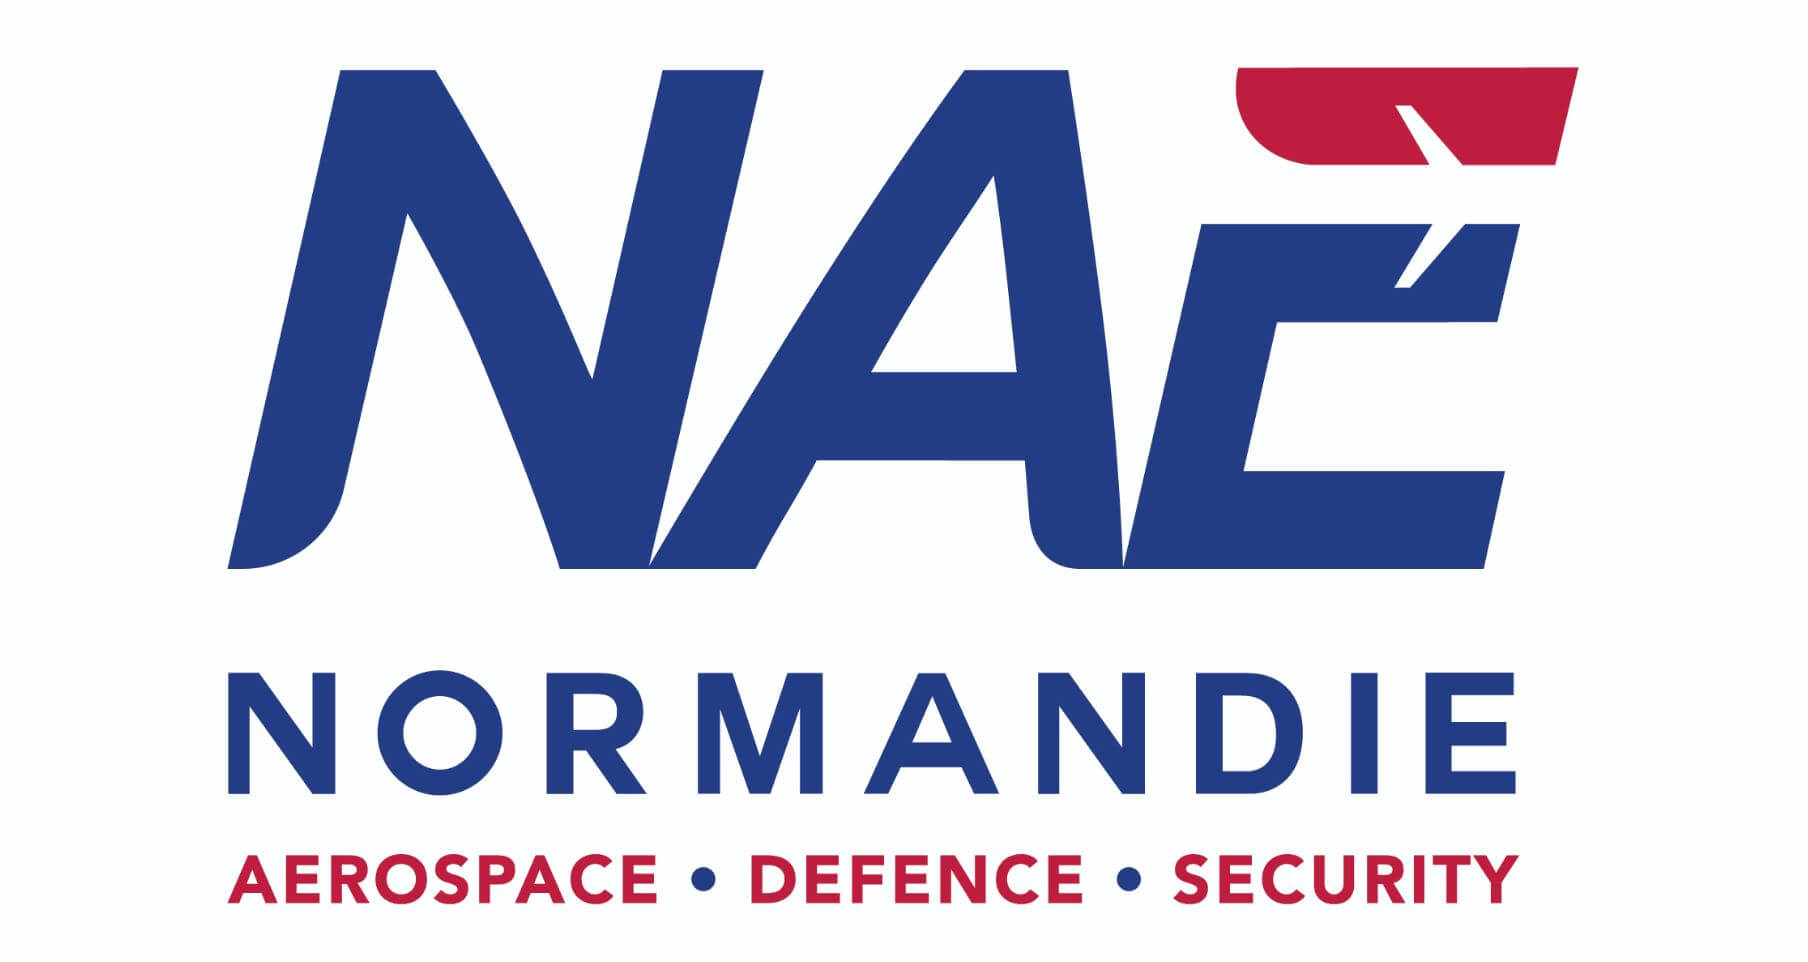 NAE-logo